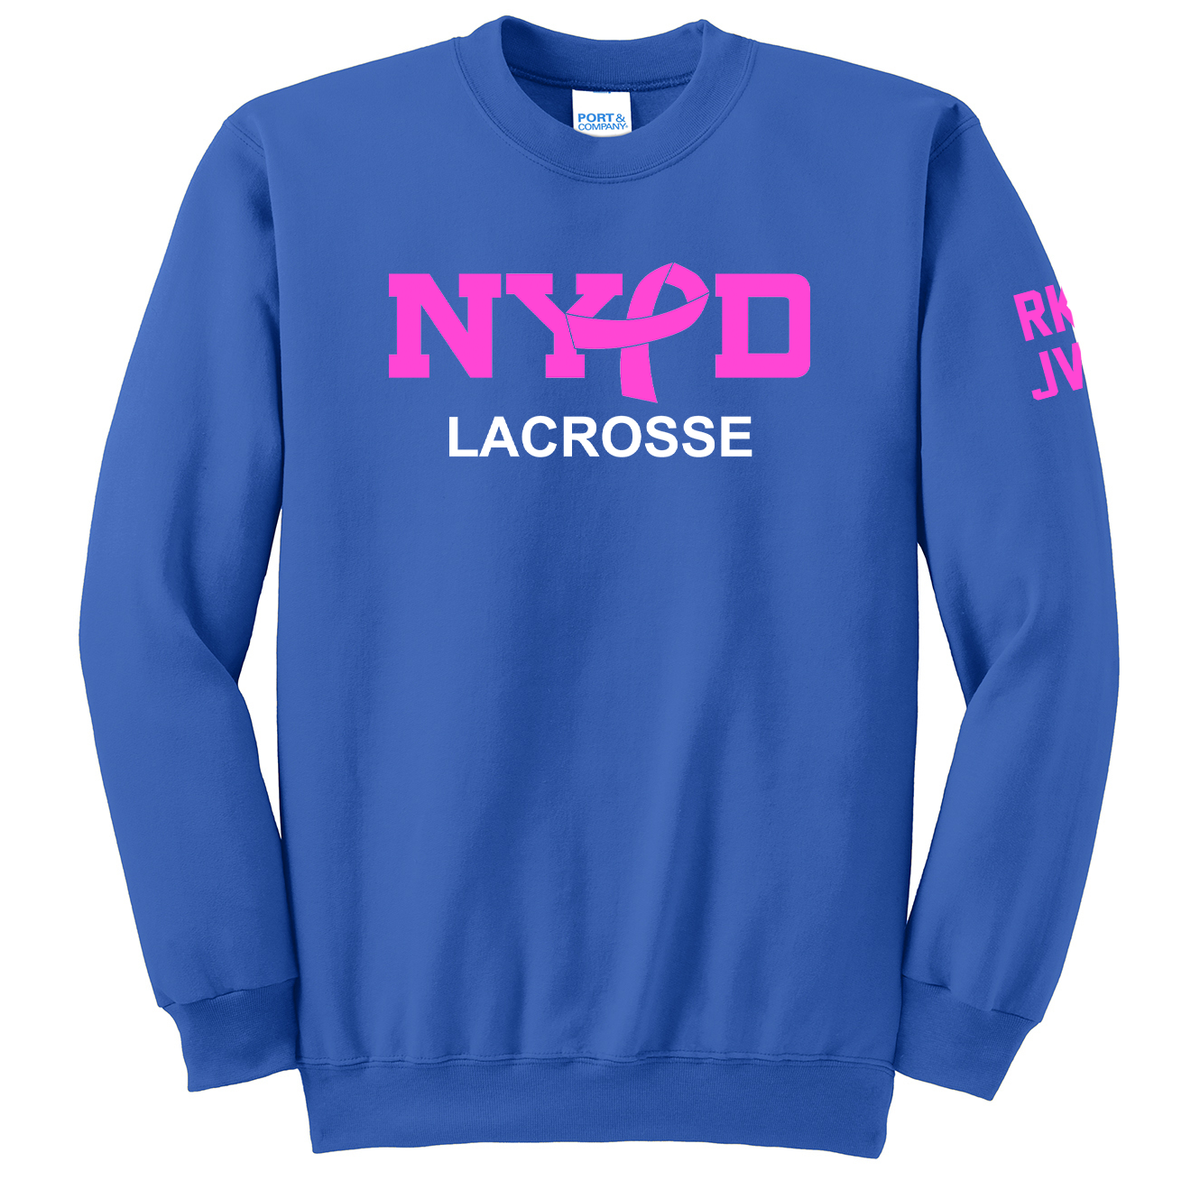 NYPD Lacrosse Crew Neck Sweater